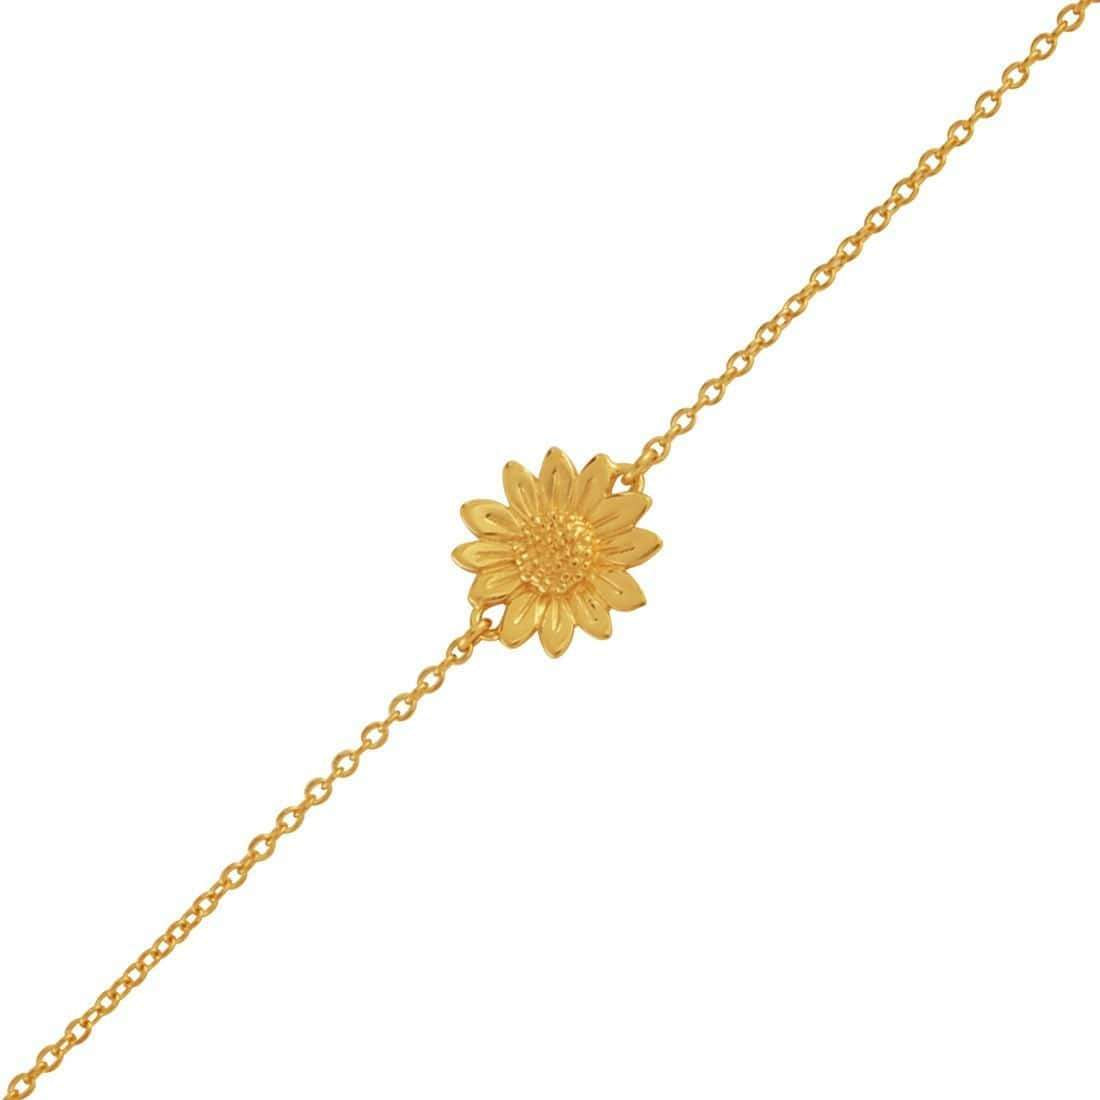 Sunflower Bracelet - Gold